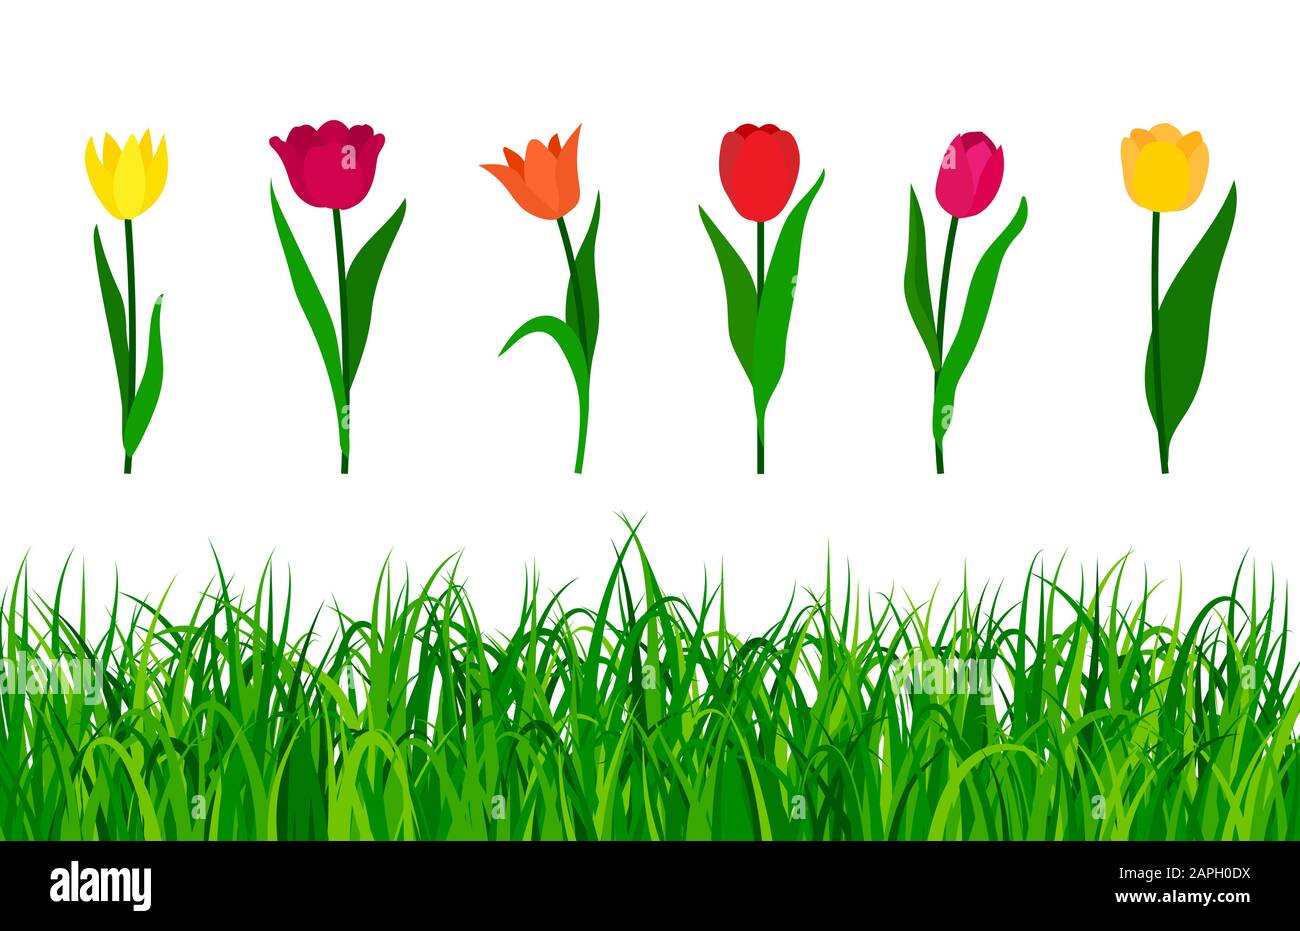 Bunte Tulpen mit grünem Gras isoliert auf weißem Hintergrund. Vektorgrafiken Stock Vektor